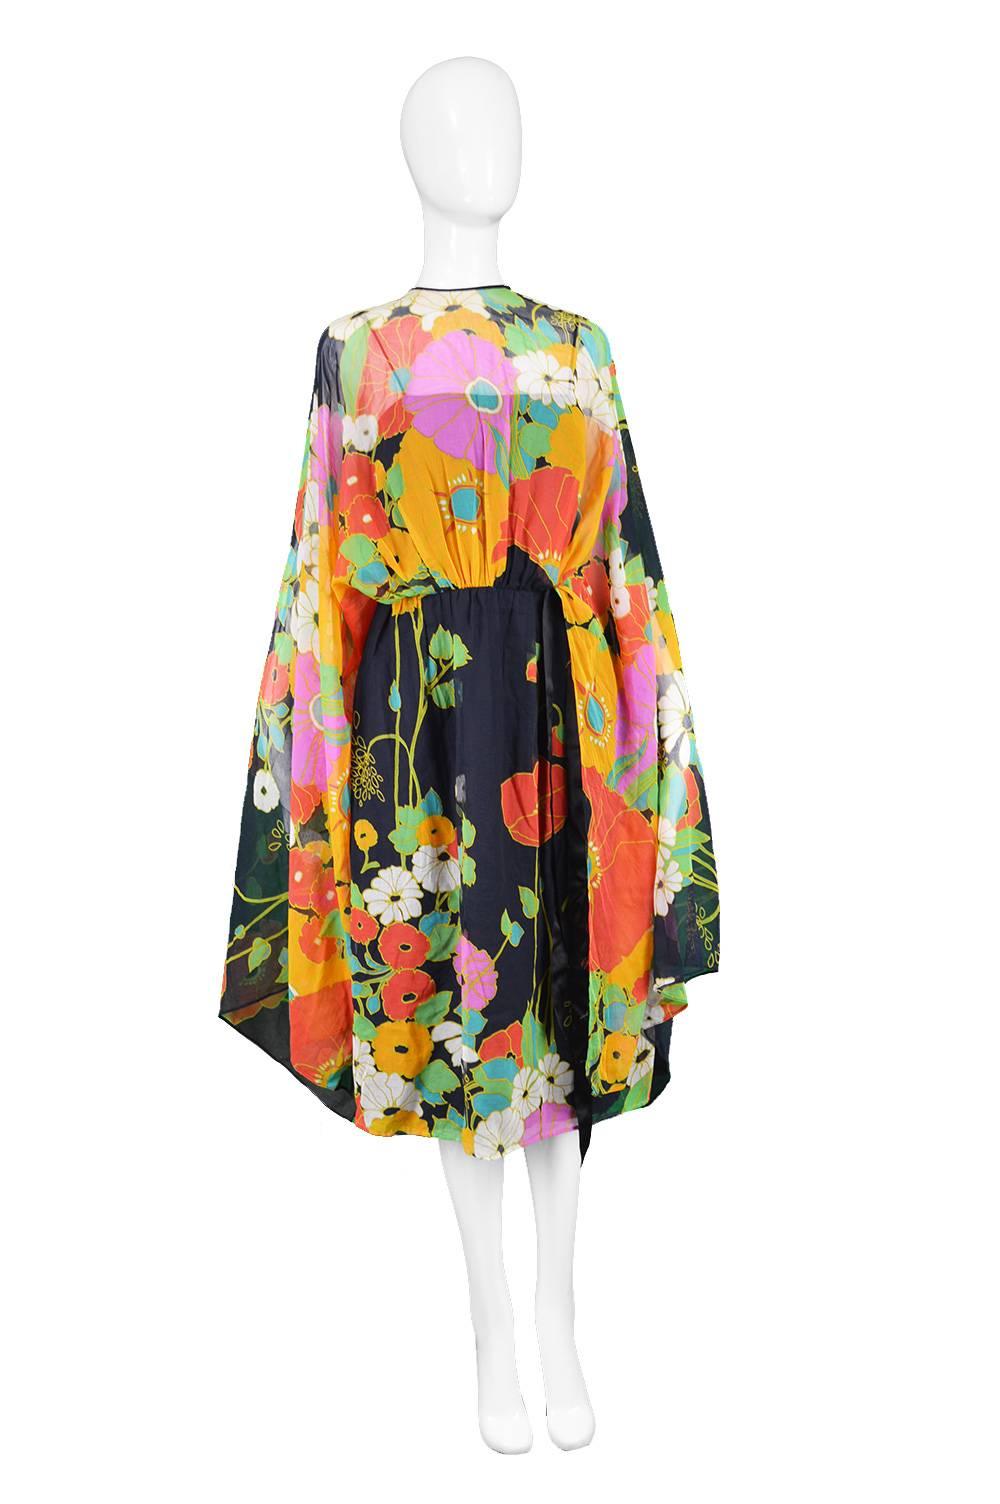 Capriccio Vintage Cotton Kimono Sleeve Vibrant Multicoloured Dress, 1970s

Estimated Size: UK 8/ US 4/ EU 36. Please check measurements. 
Bust - 32” / 81cm
Waist - 28”  / 71cm
Hips - 42” / 106cm
Length (Shoulder to Hem) - 35” / 89cm

Condition: